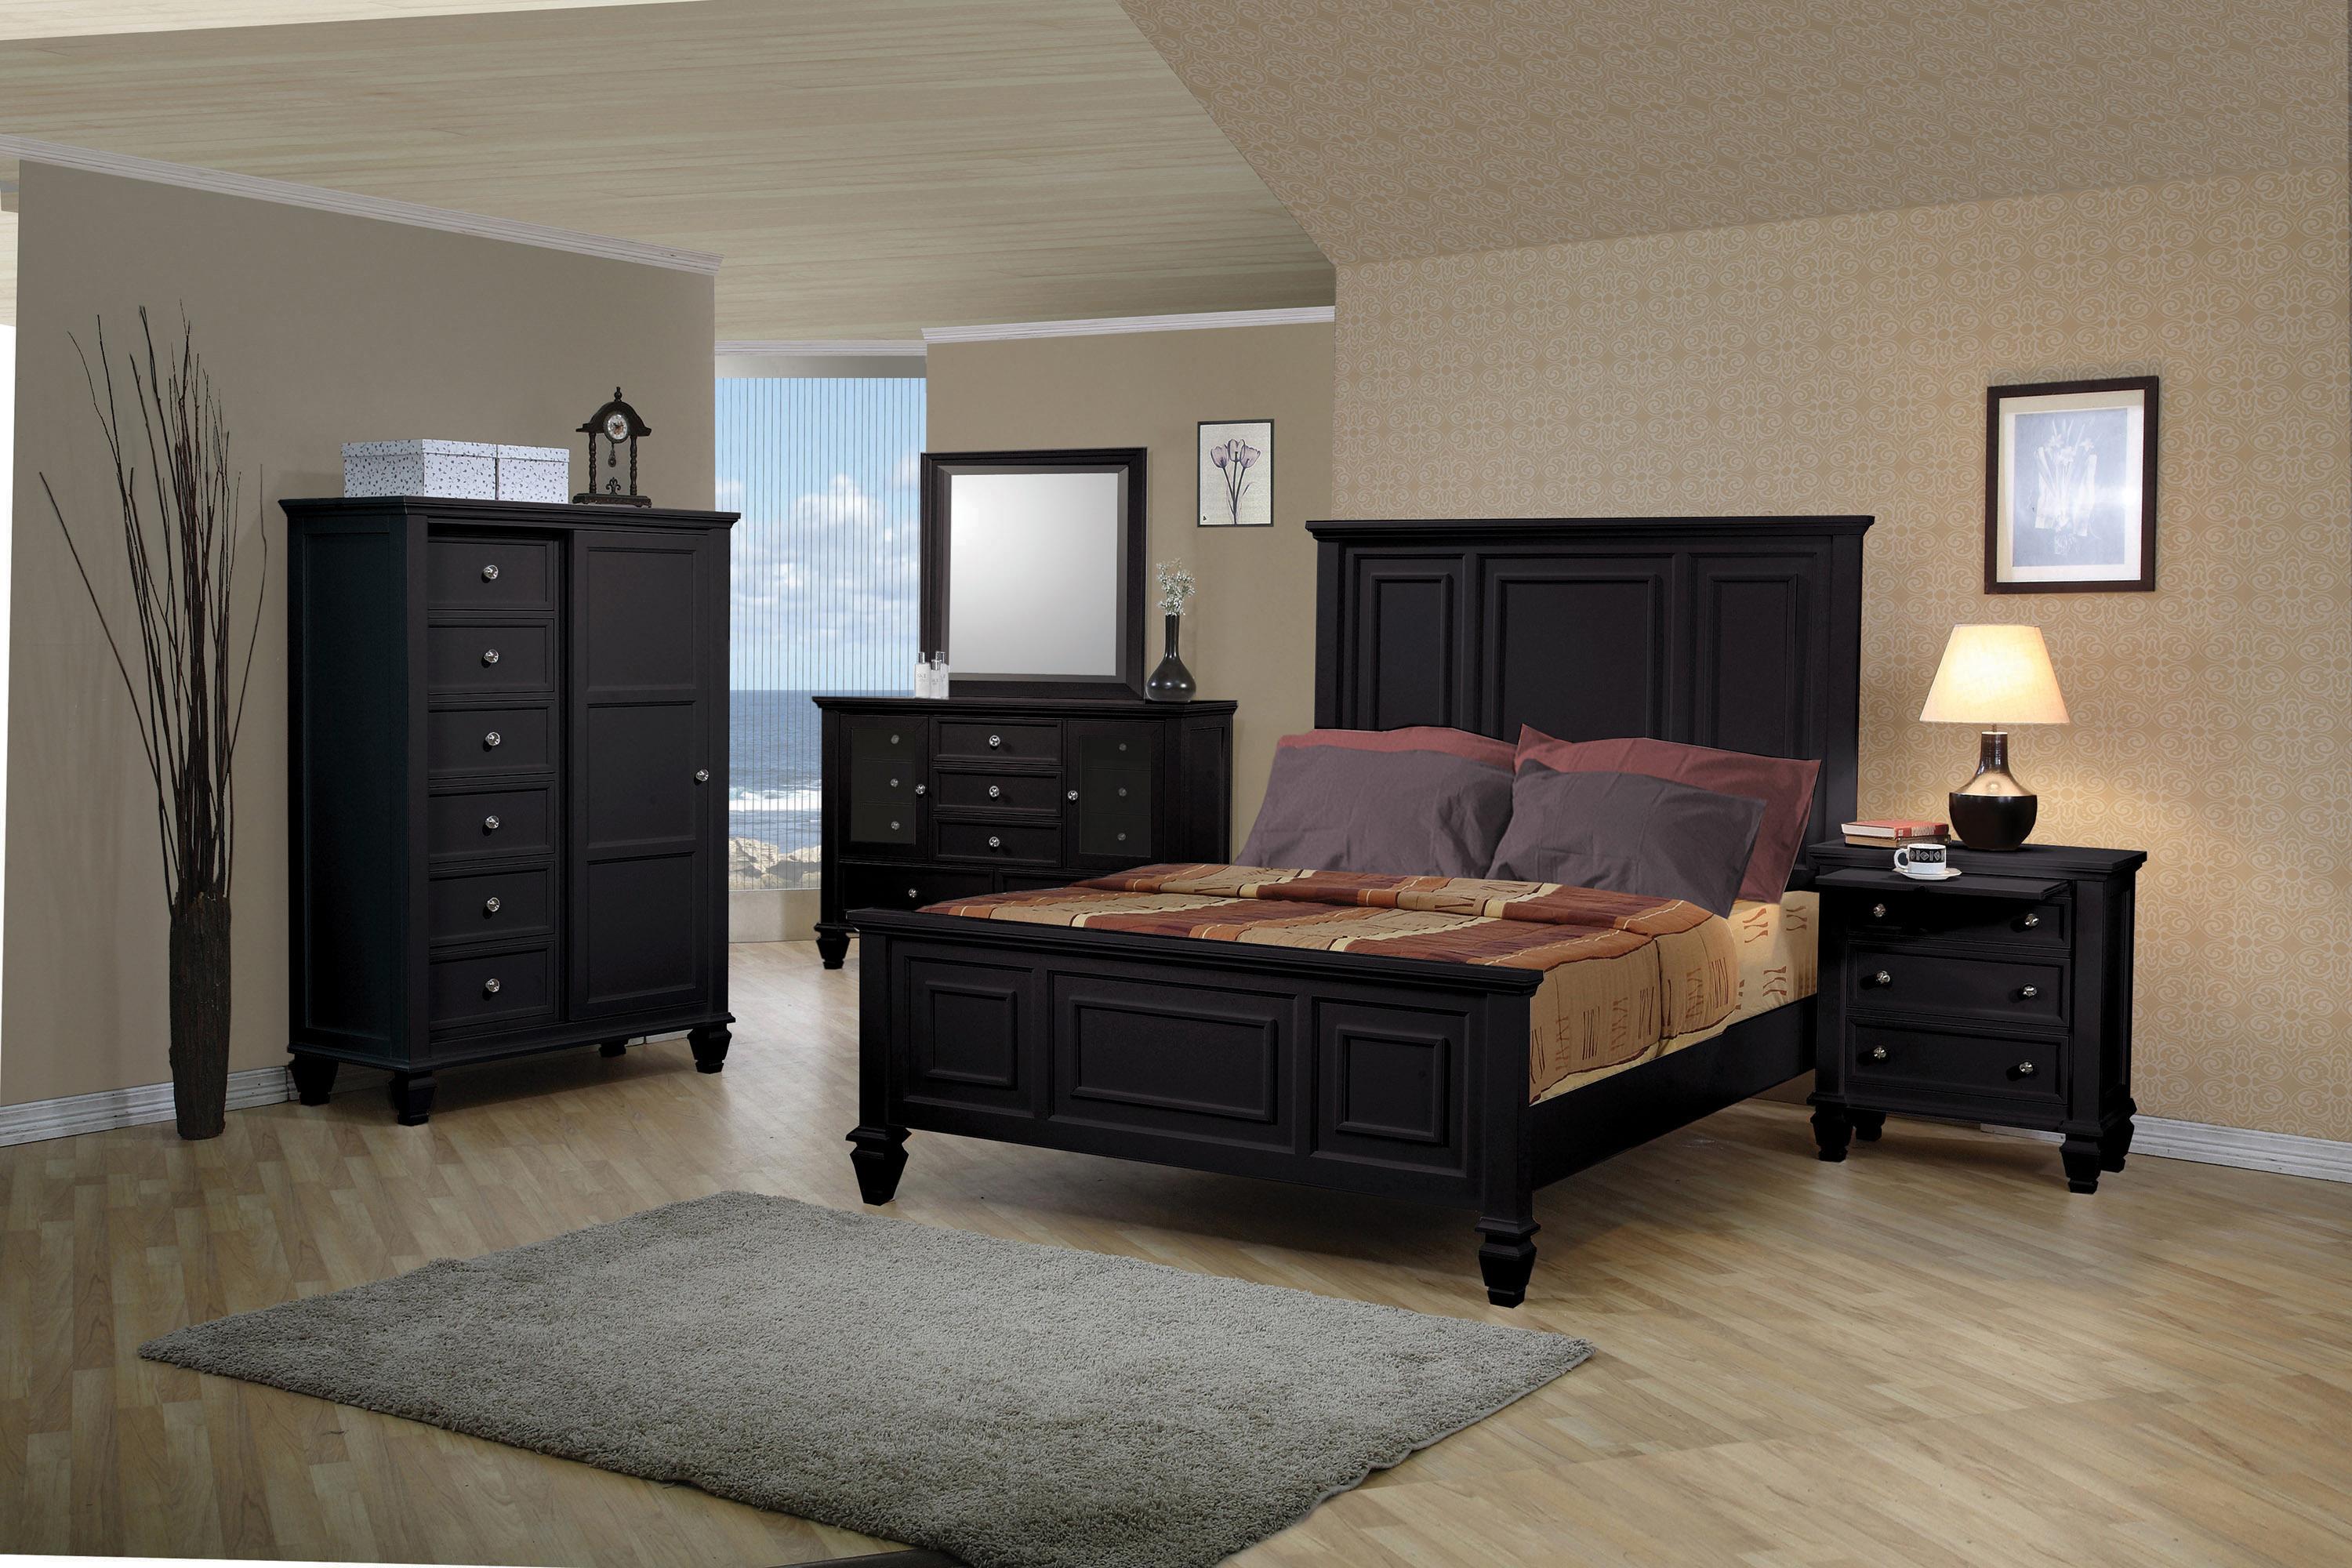 

    
Cottage Black Solid Wood King Bedroom Set 6pcs Coaster 201321KE Sandy Beach
